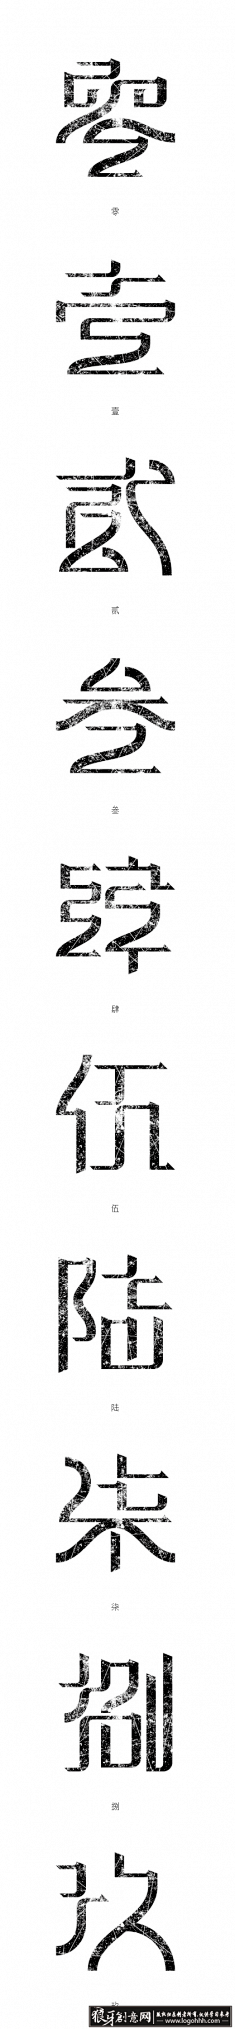 零壹贰叁肆伍陆柒捌玖的字体设计 字体标志...